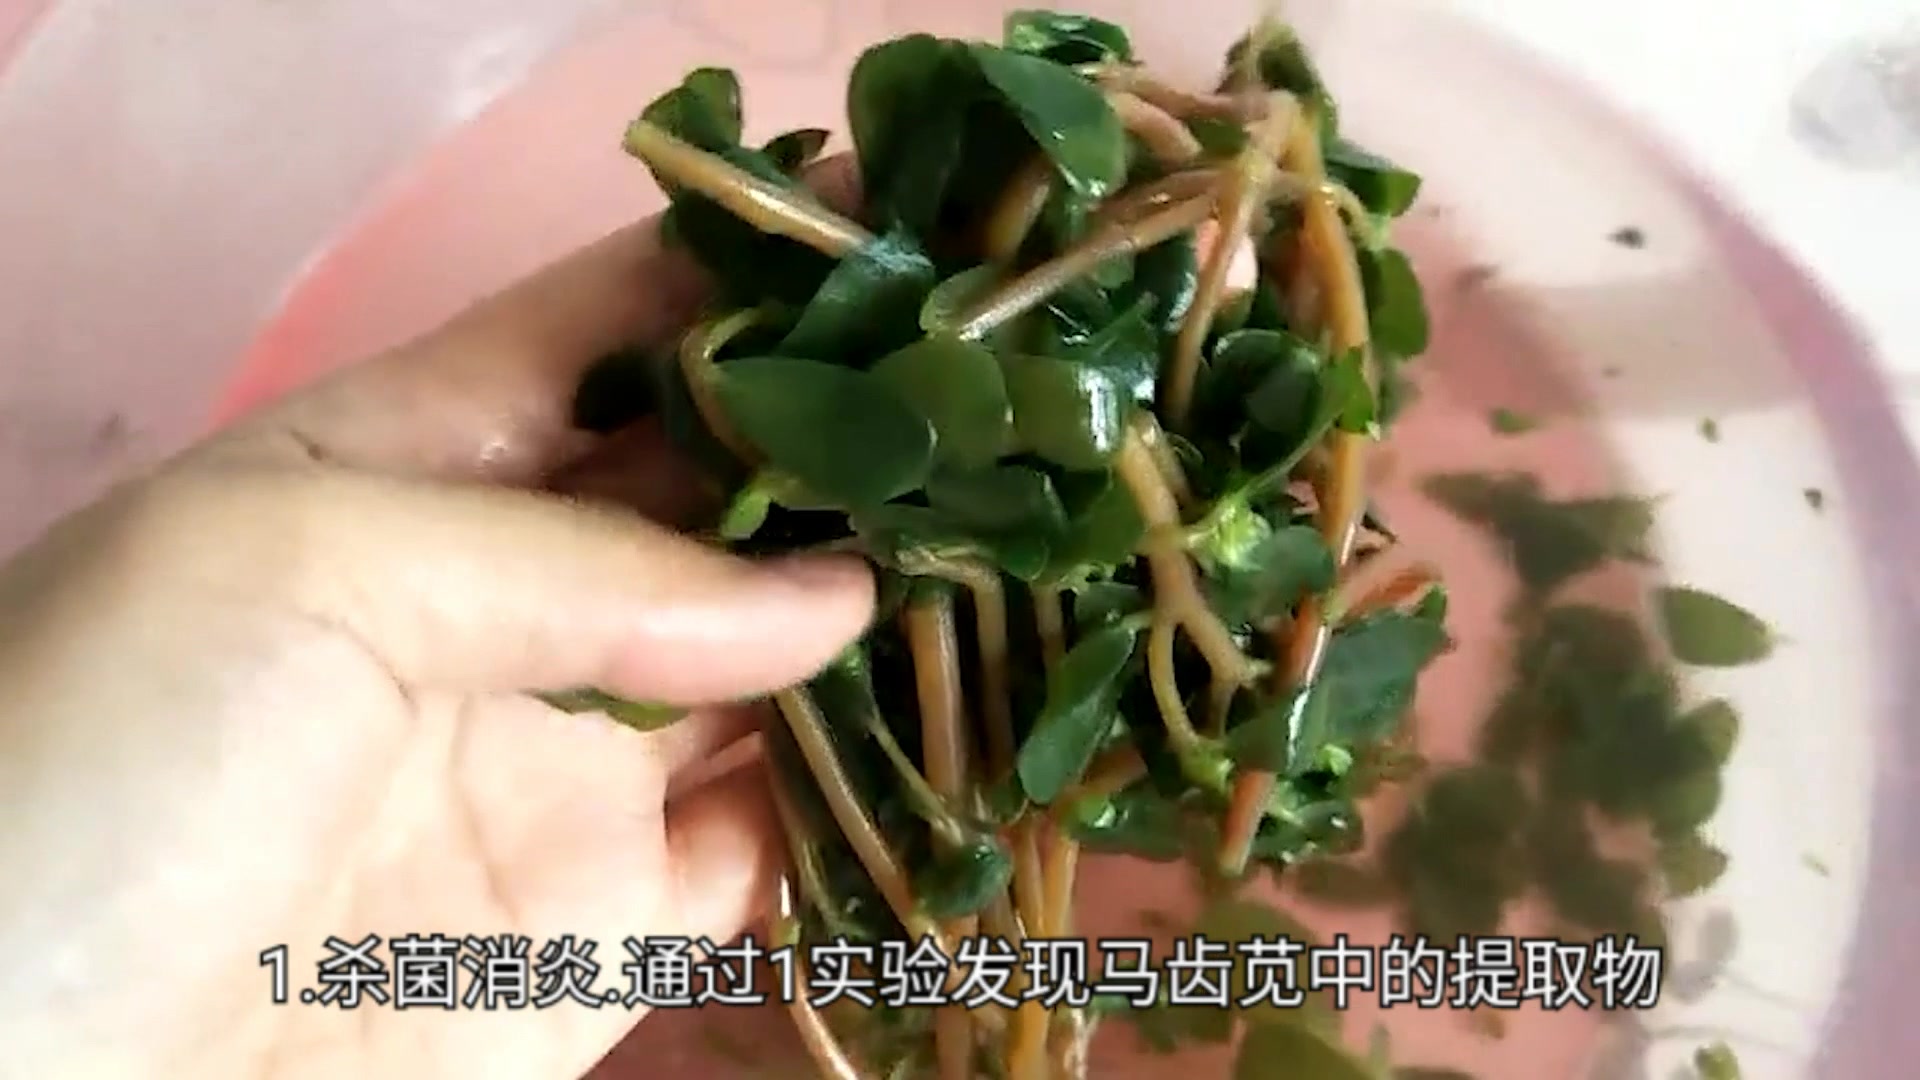 用柳树叶做的小菜 - 美味厨房 - 得意生活-武汉生活消费社区